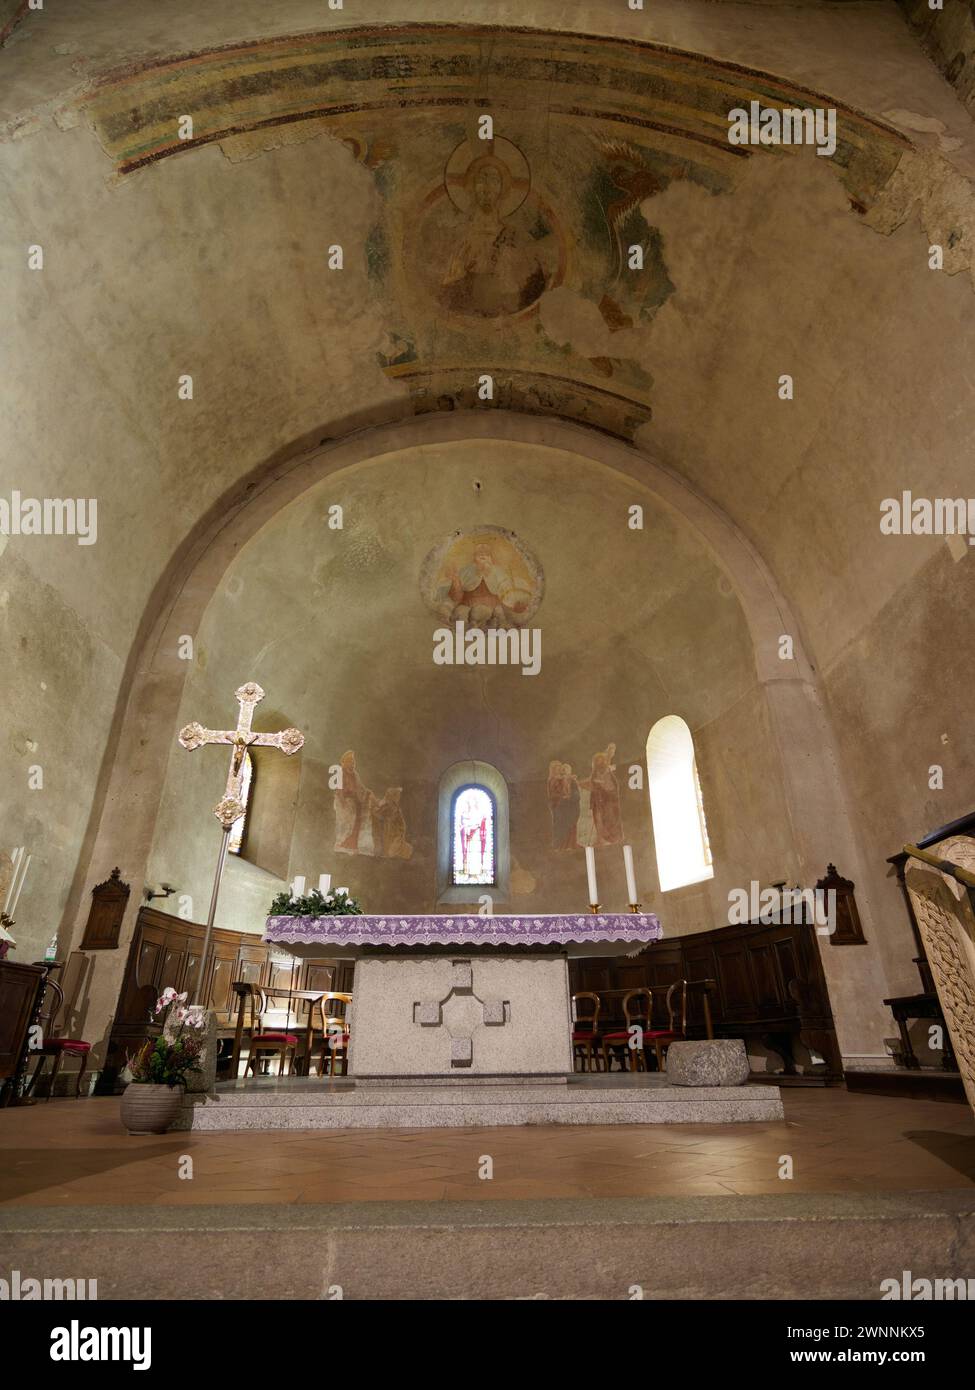 Église médiévale de SS. Pietro e Paolo à Agliate, province de Monza Brianza, Lombardie, Italie. Intérieur Banque D'Images